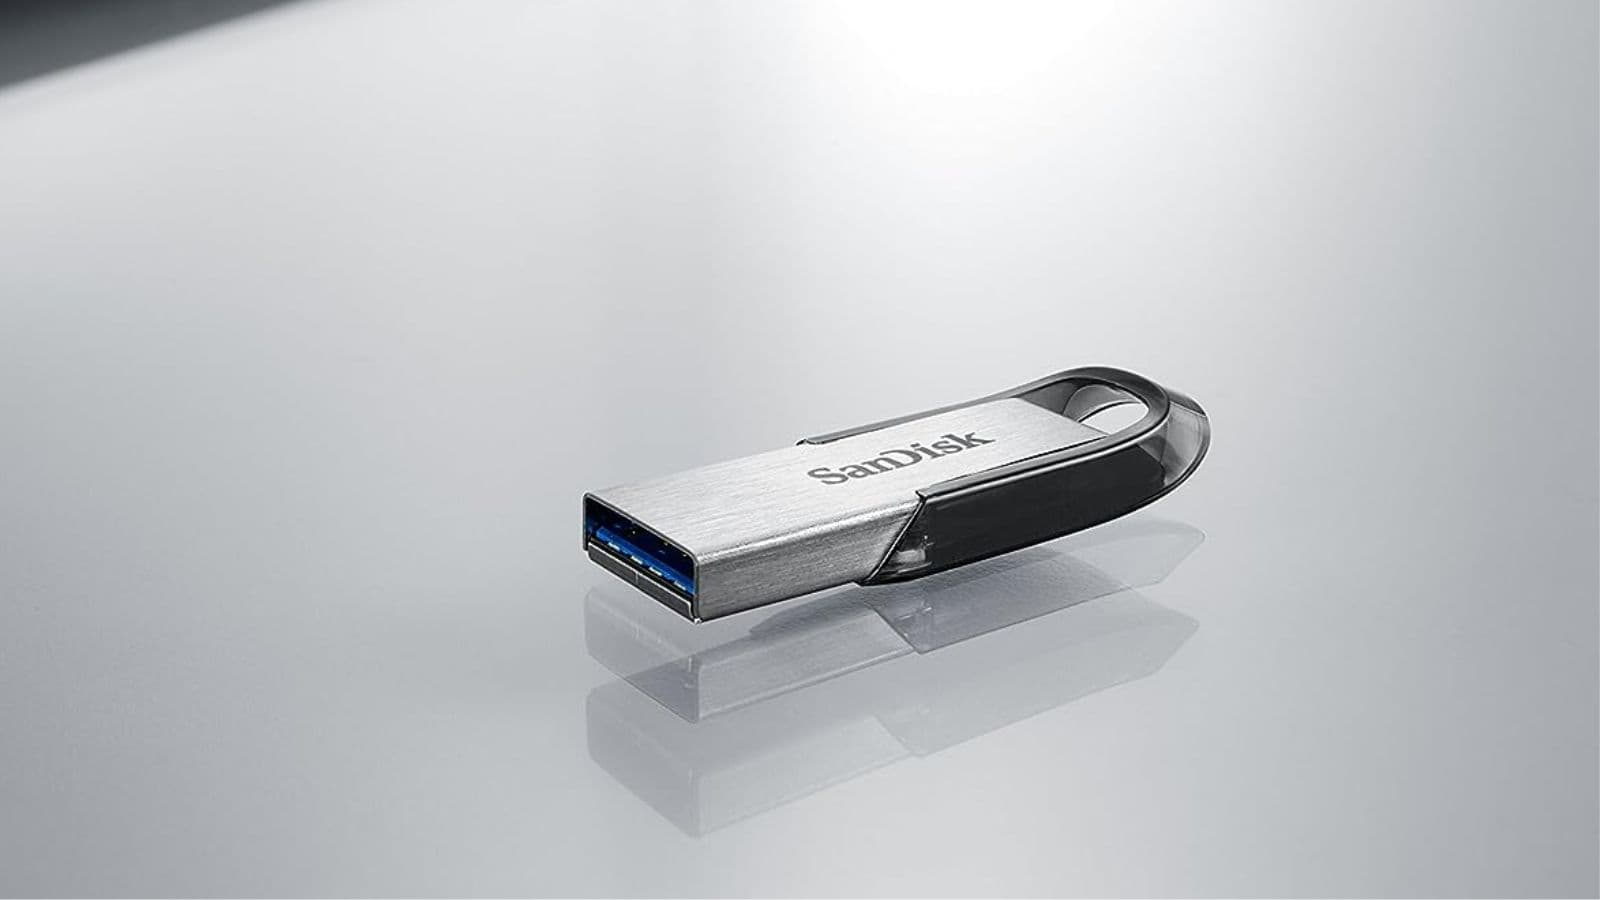 Cette clé USB Sandisk est proposée à un prix défiant toute concurrence sur